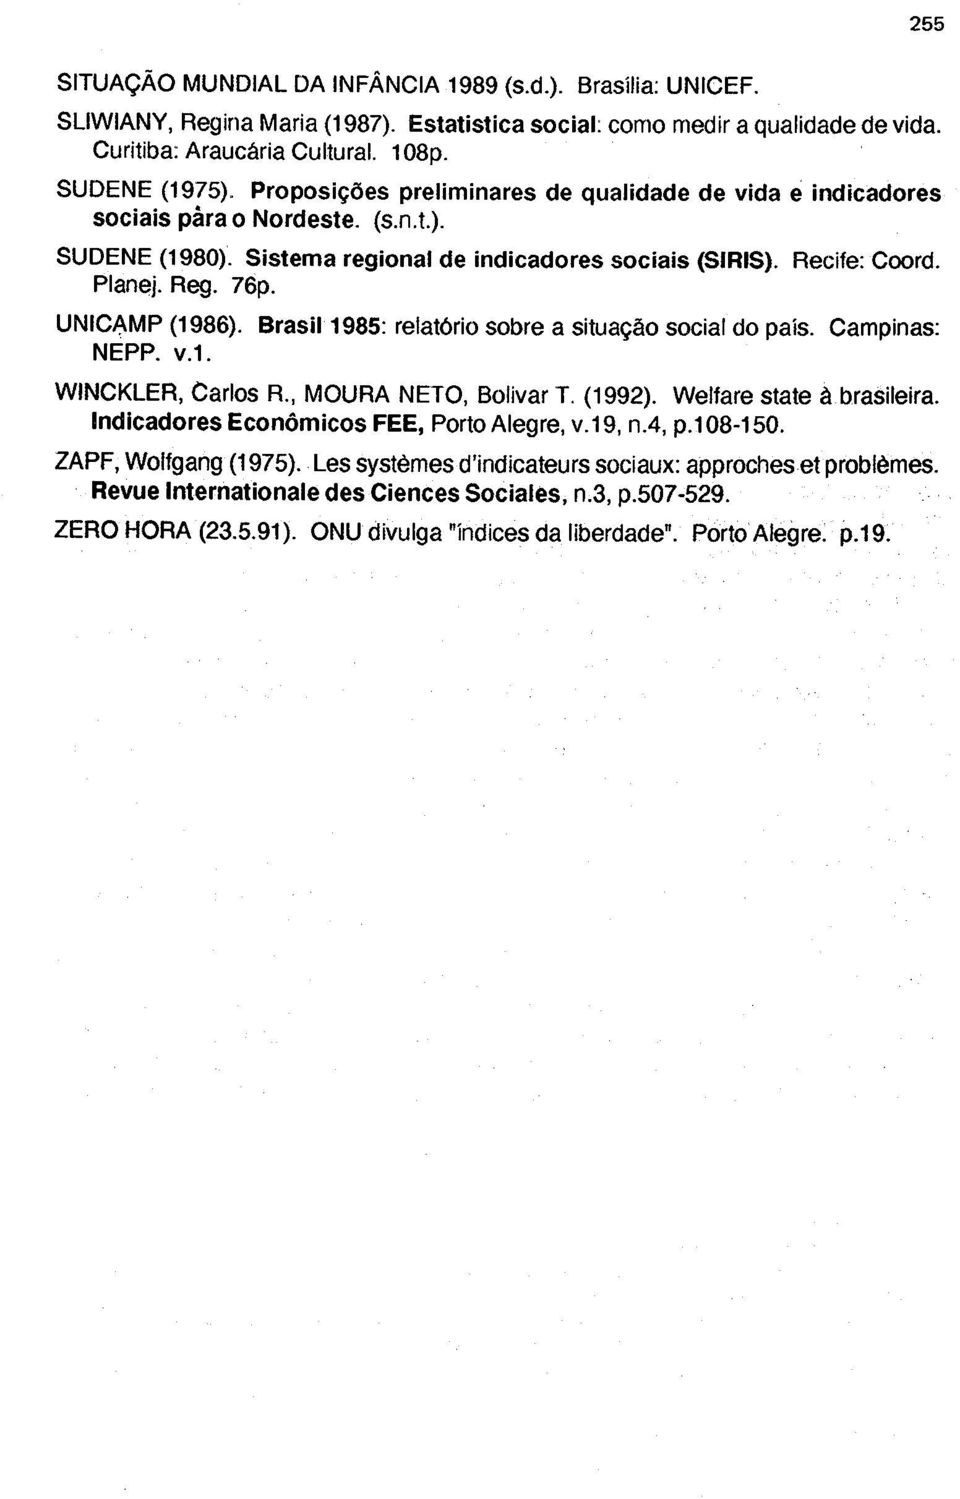 UNICAMP (1986). Brasil 1985: relatório sobre a situação social do país. Campinas: NEPP. v.1. WINCKLER, Carlos R., MOURA NETO, Bolívar T. (1992). Welfare state à brasileira.